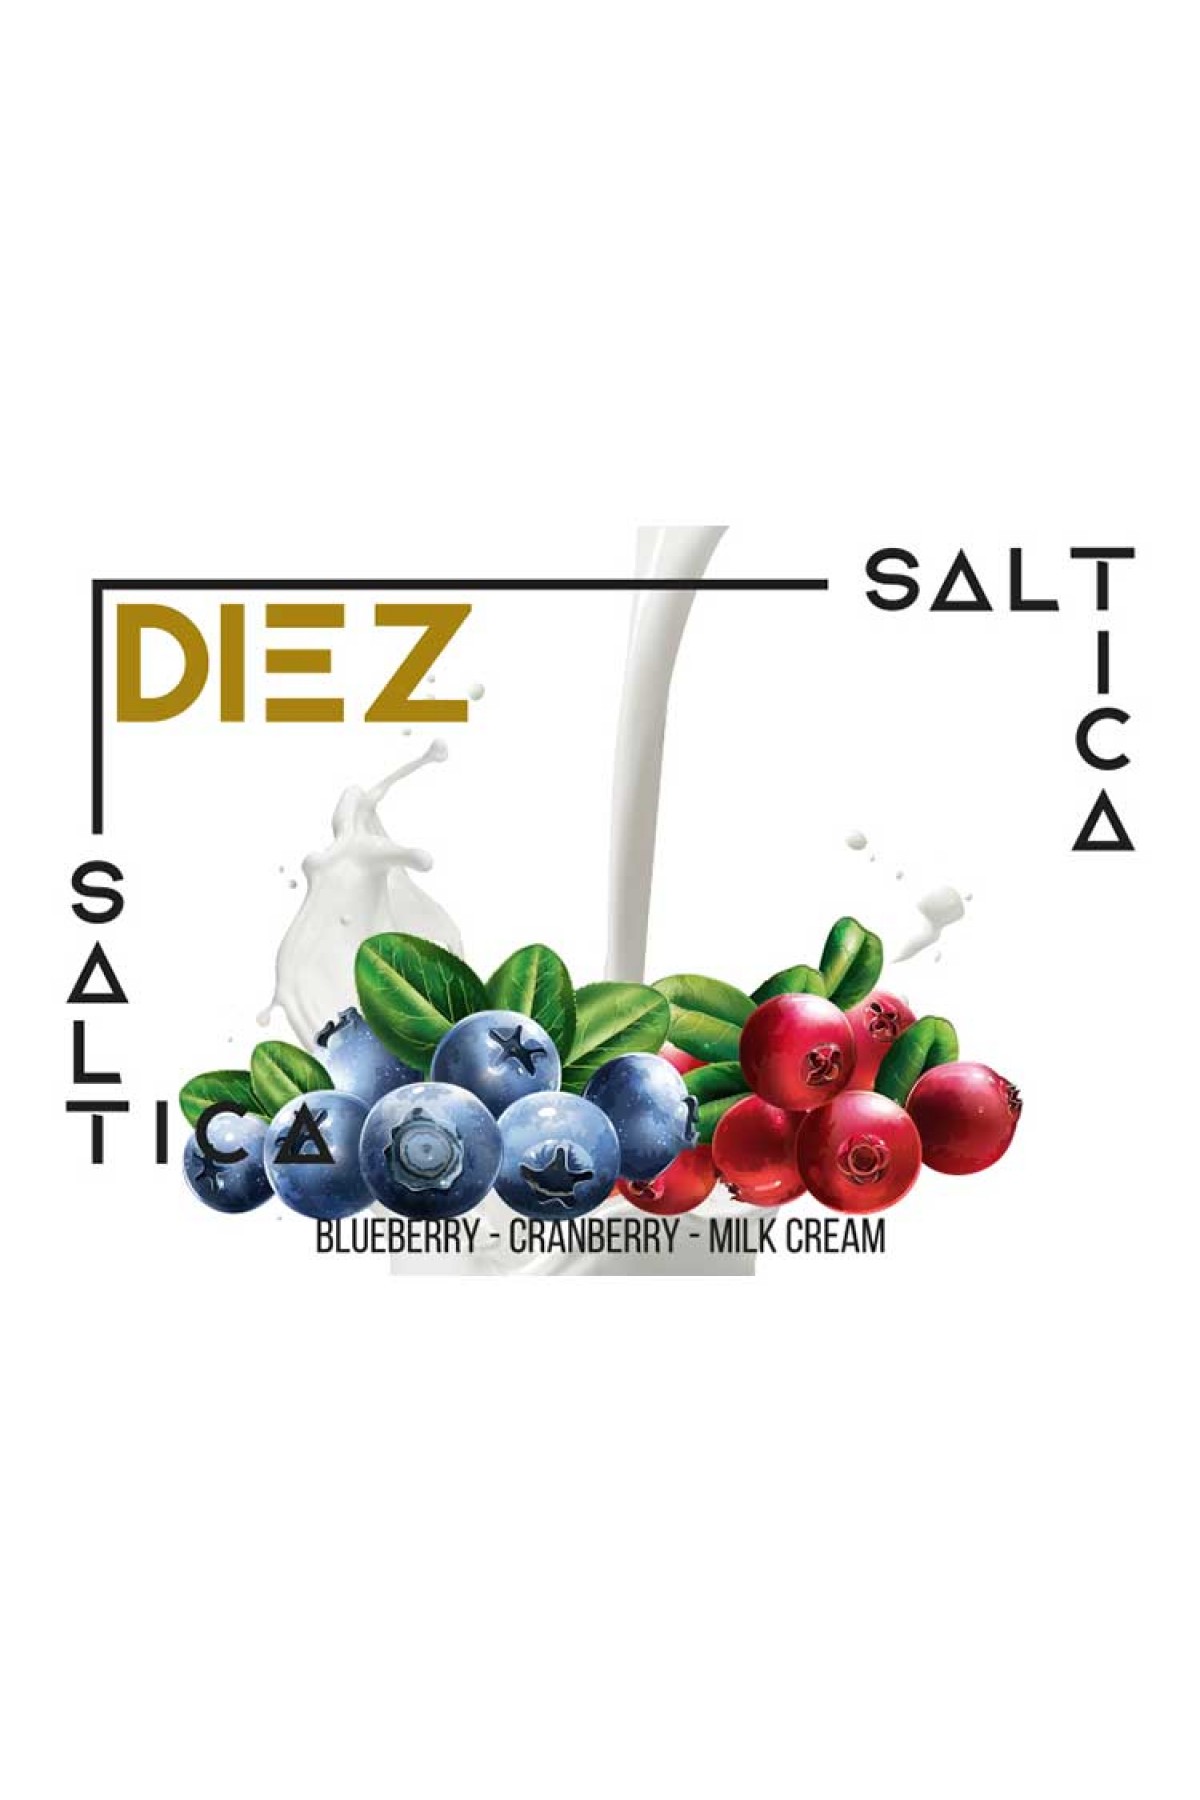 Saltica - Diez Salt Likit (Yabanmersini, Kızılcık, Süt kreması) (30ML)